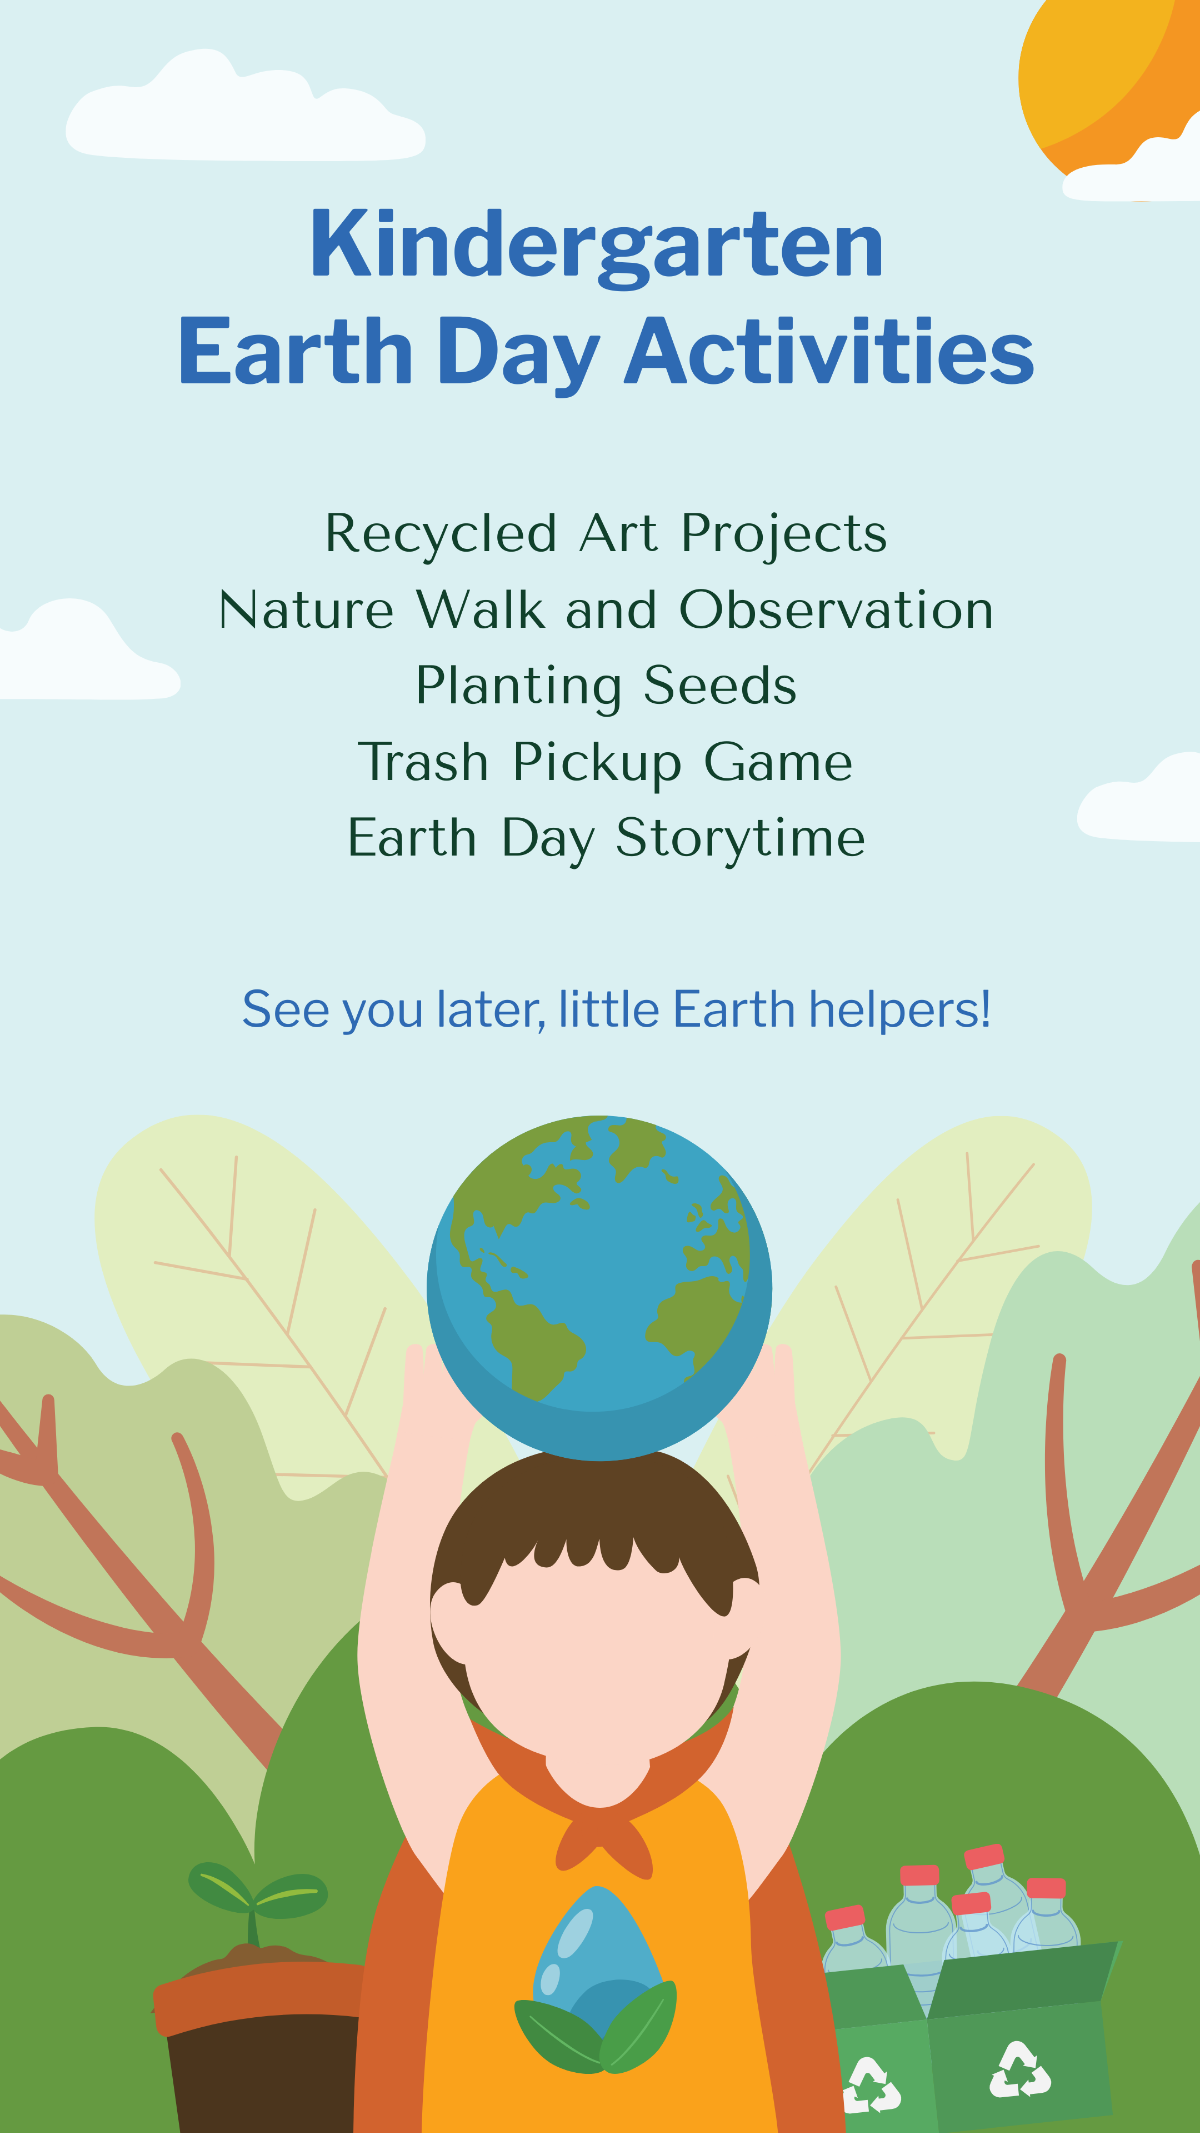 Kindergarten Earth Day Activities Template